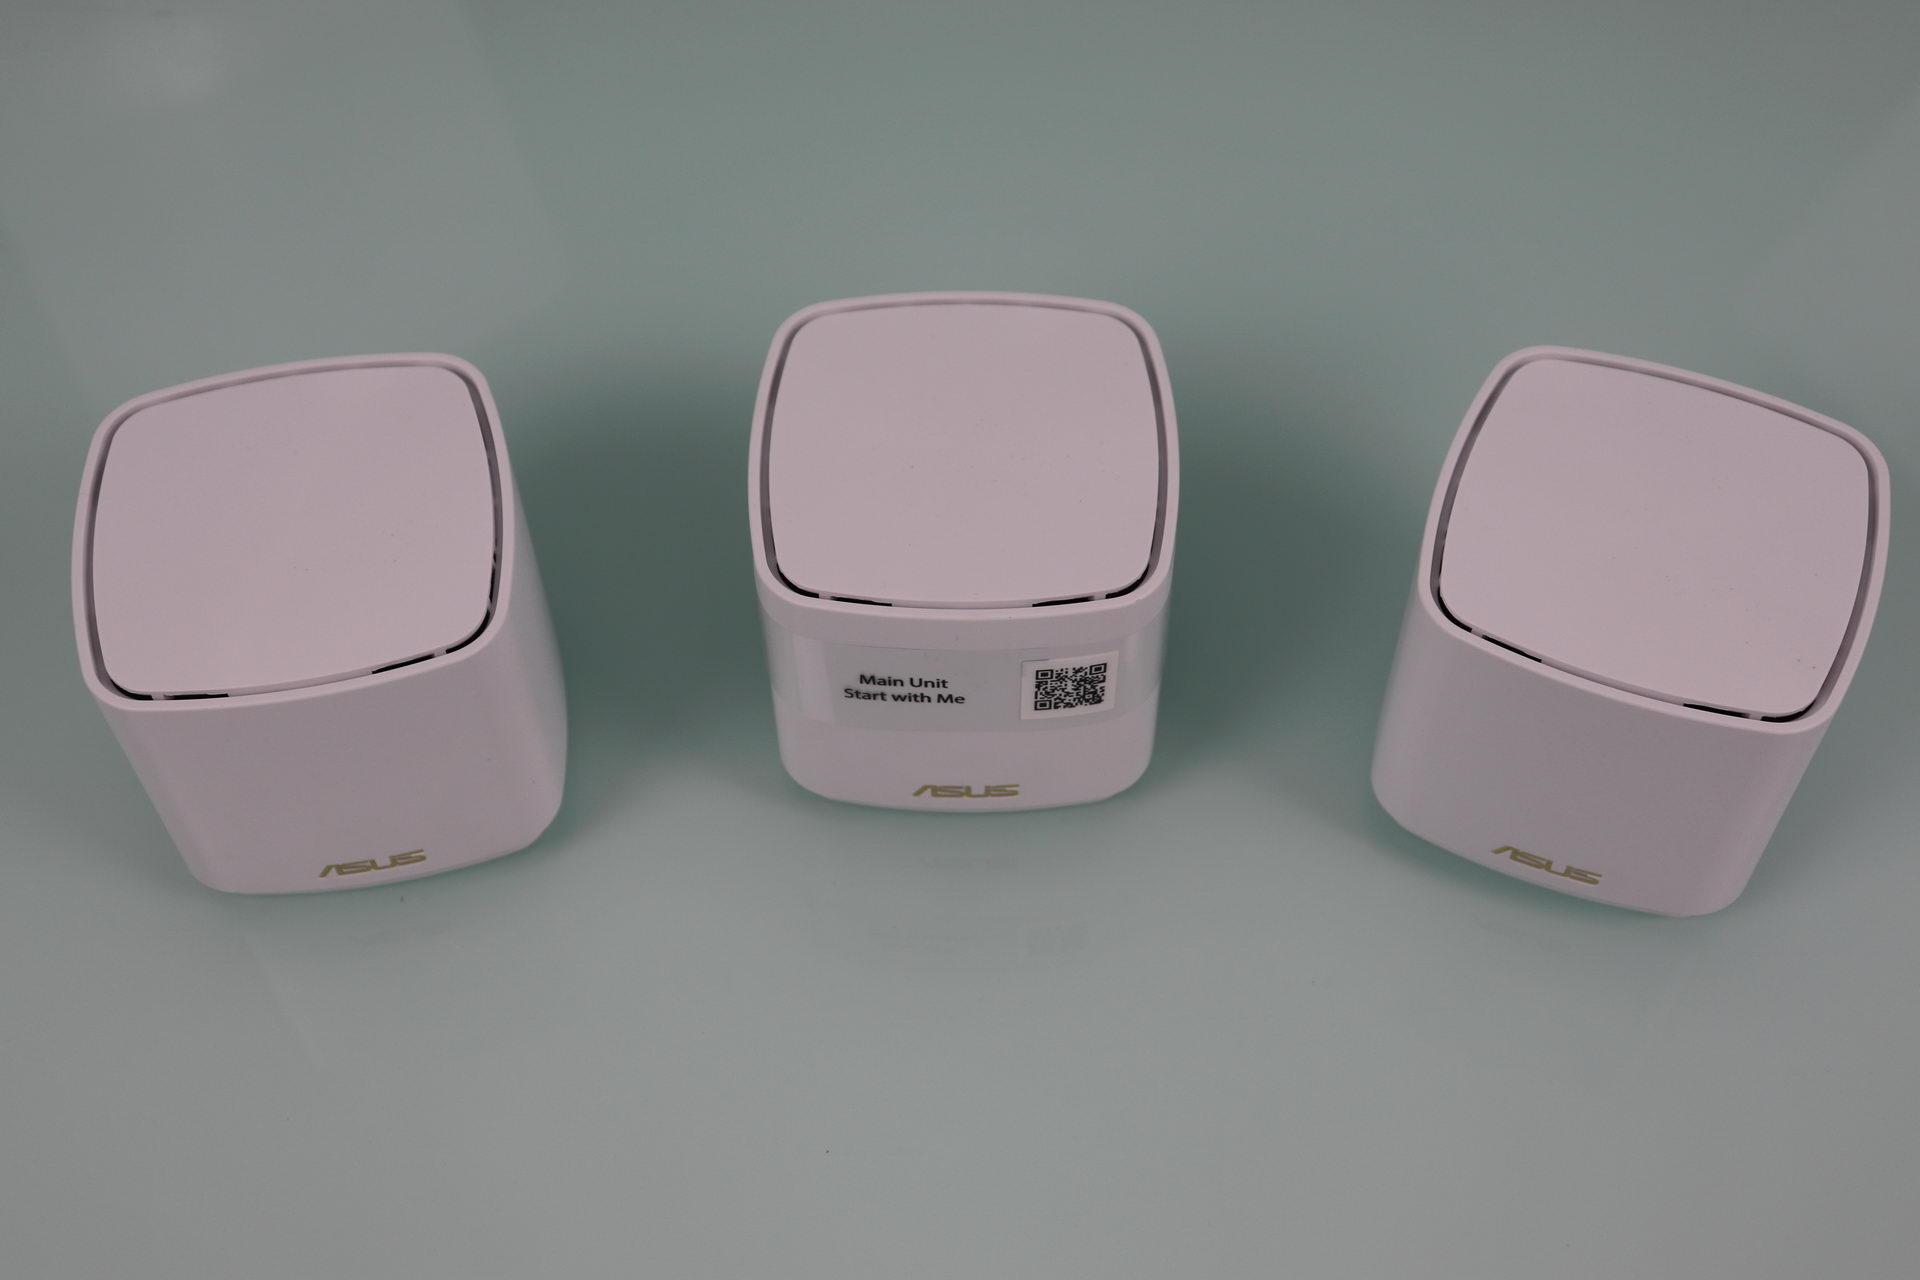 Vemos los tres equipos del sistema WiFi Mesh ASUS ZenWiFi AX Mini XD4